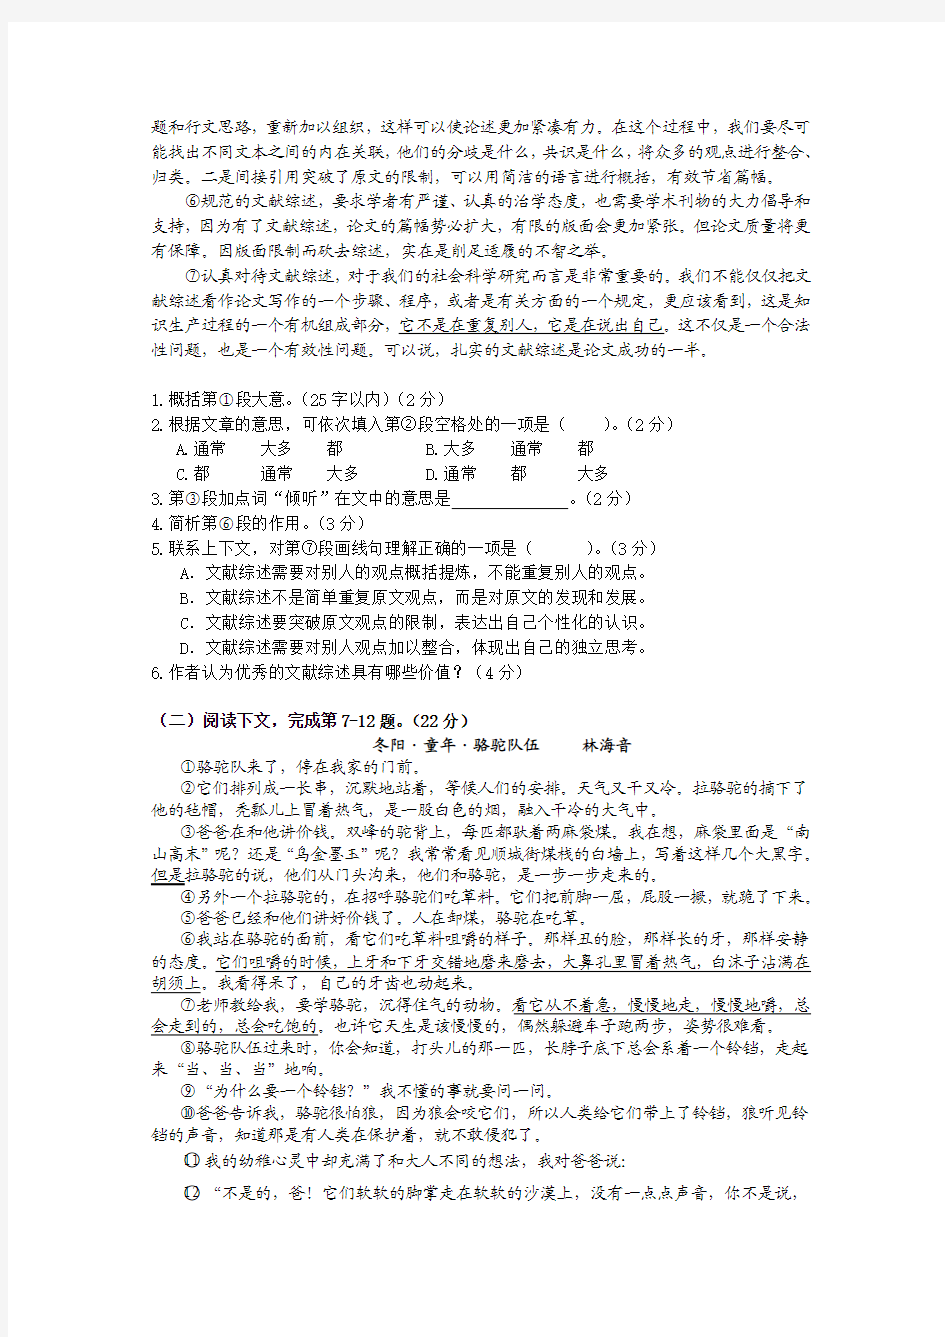 2012上海高考语文试卷及答案文字版